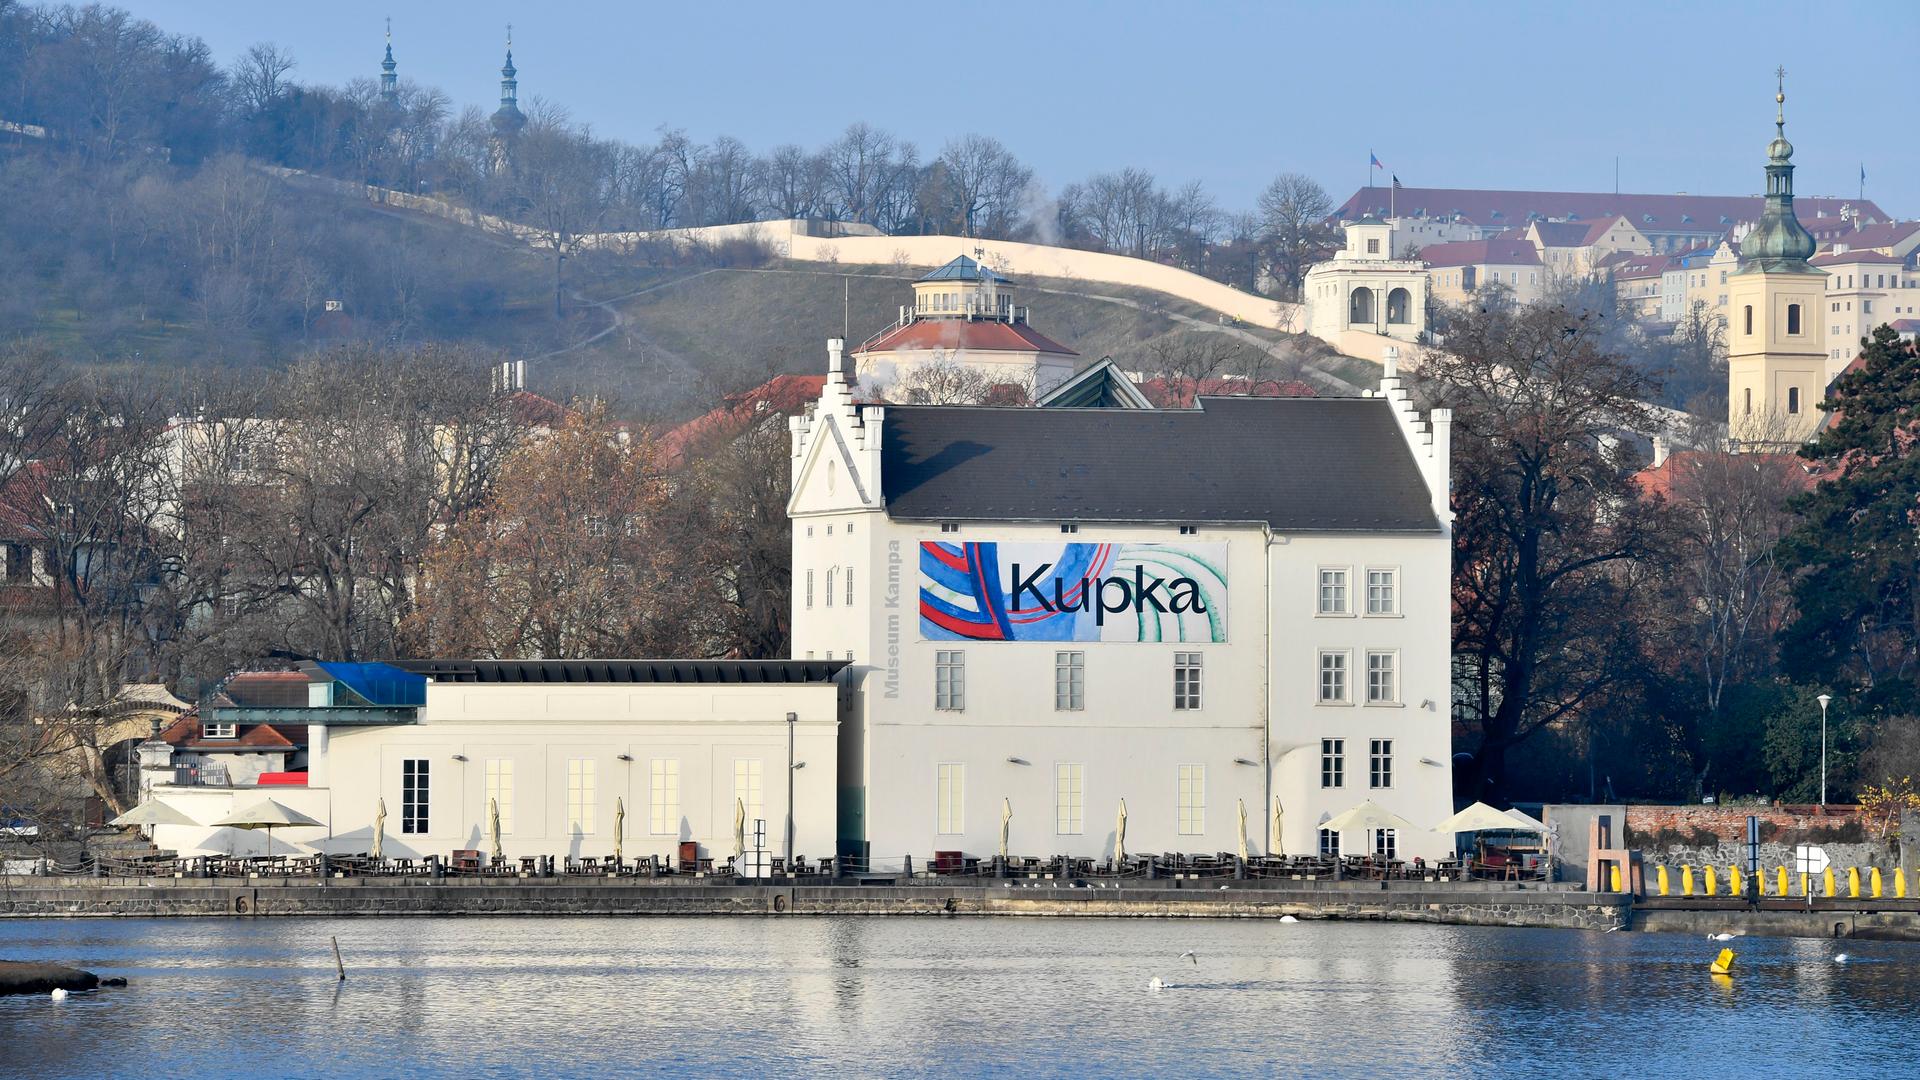 Das Museum Kampa am Ufer in Prag wirbt mit einem plakat für die ständige Ausstellung der Werke von Frantisek Kupka